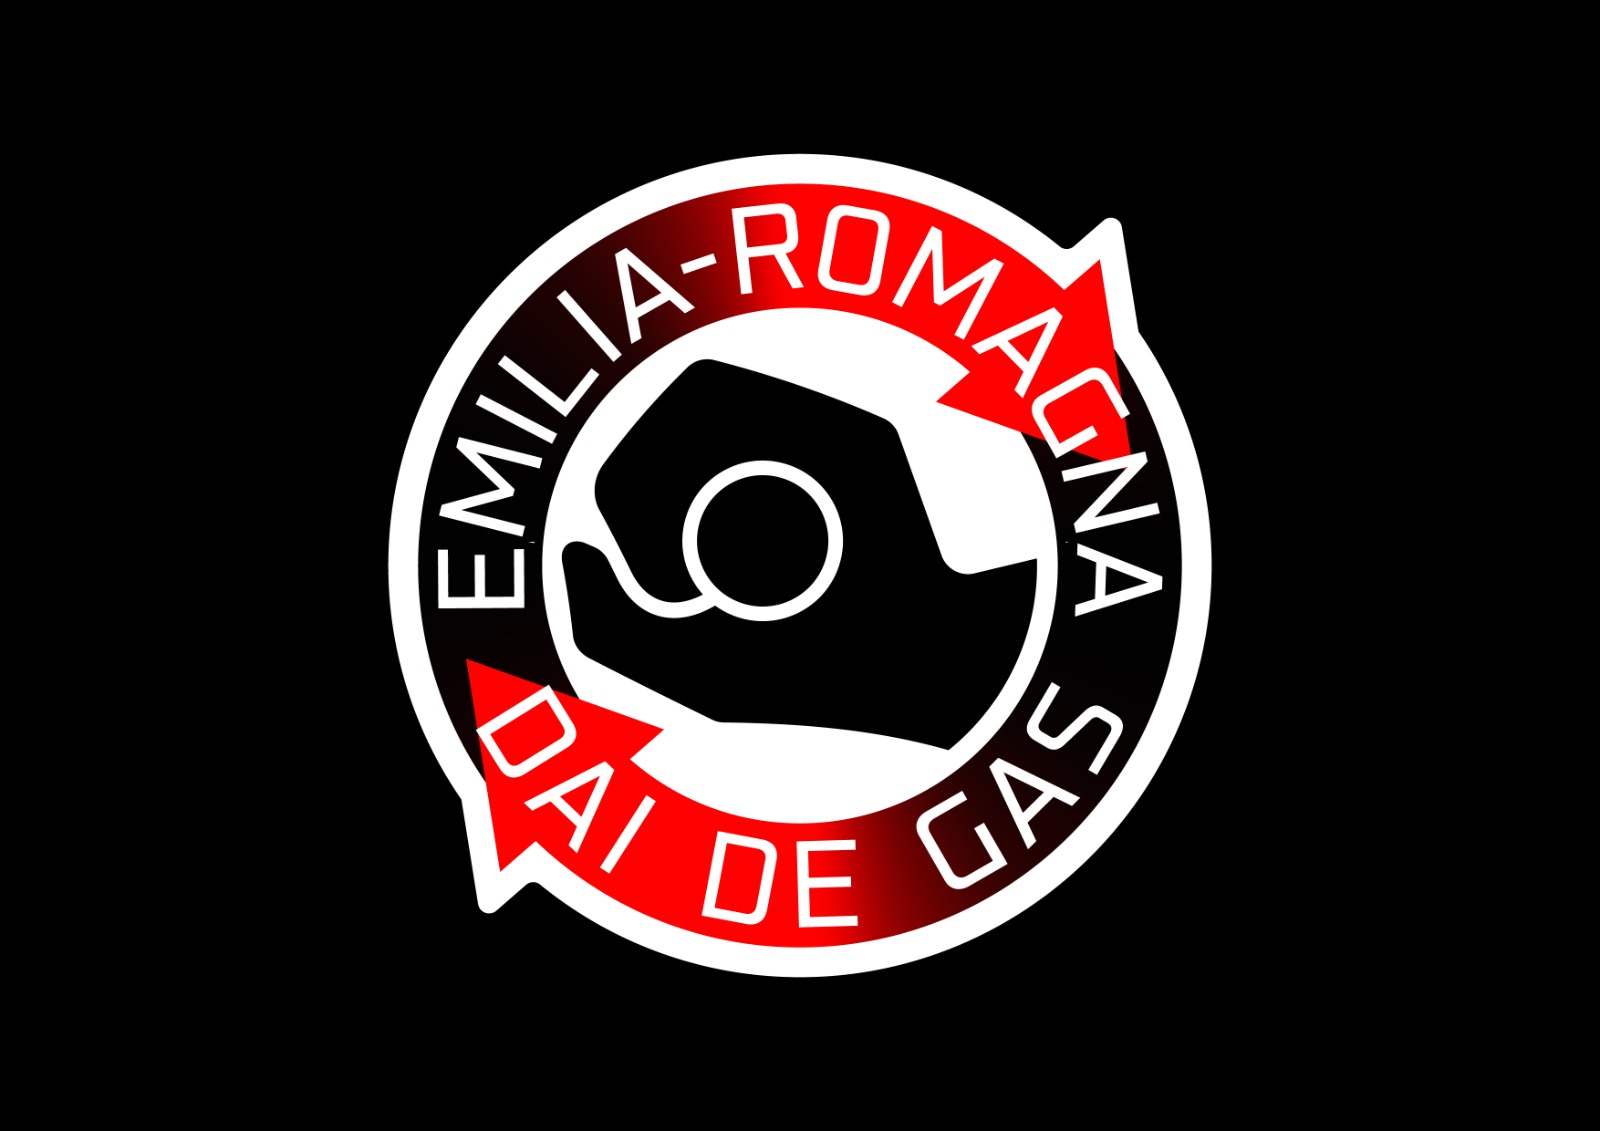 “Dai de gas”: in pista il sostegno di Aldo Drudi all’Emilia-Romagna